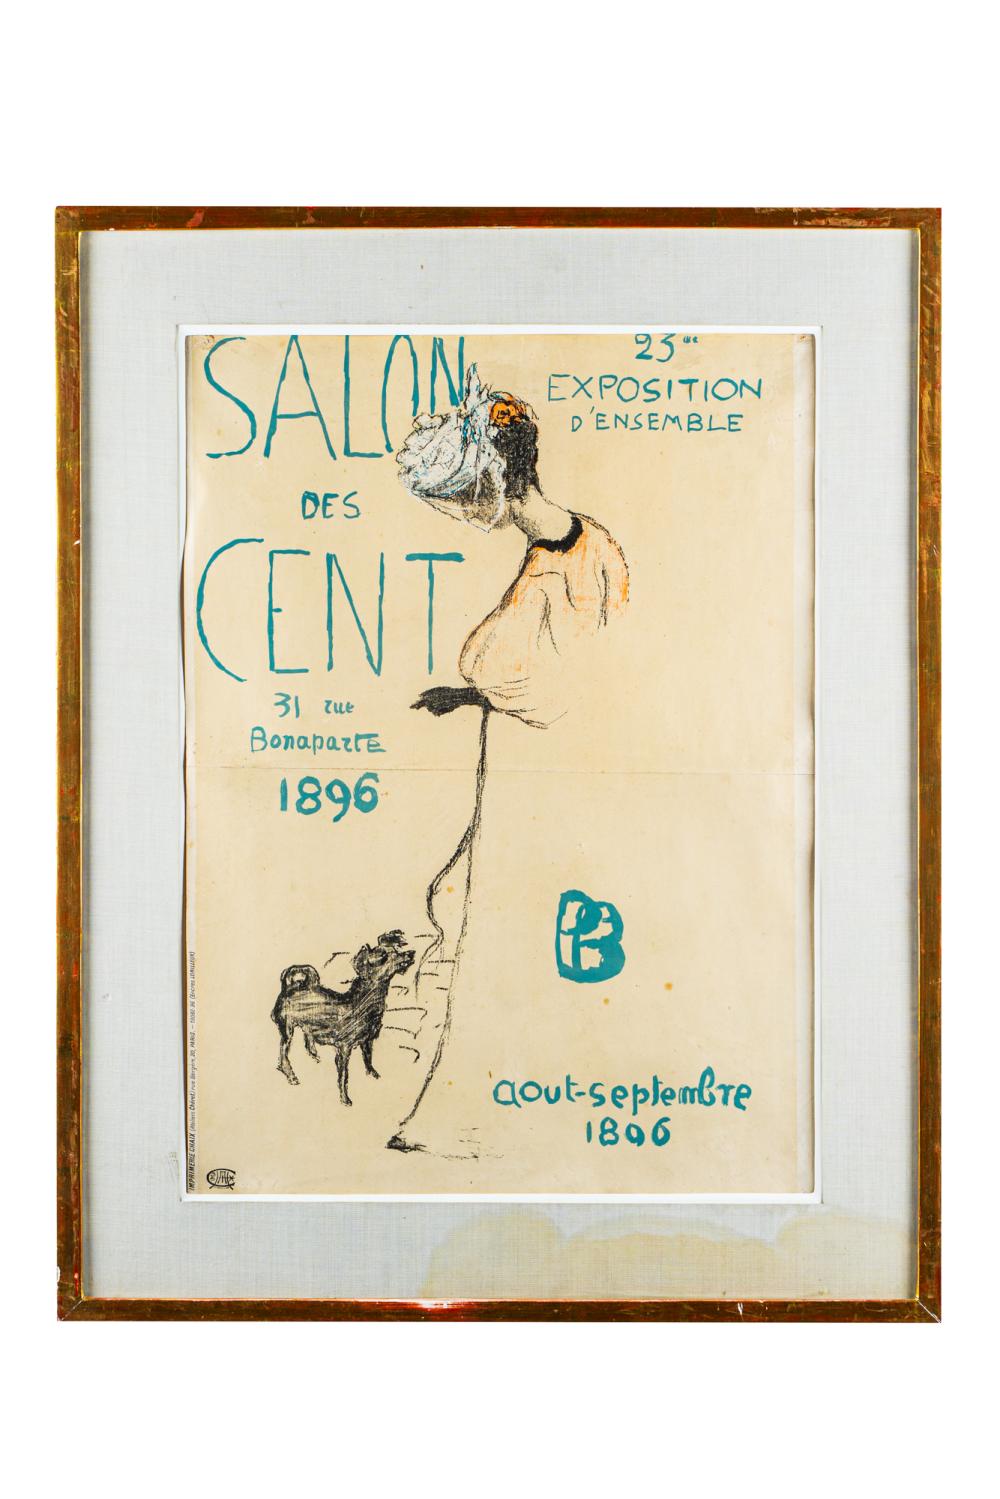 PIERRE BONNARD: "SALON DES CENT"1896